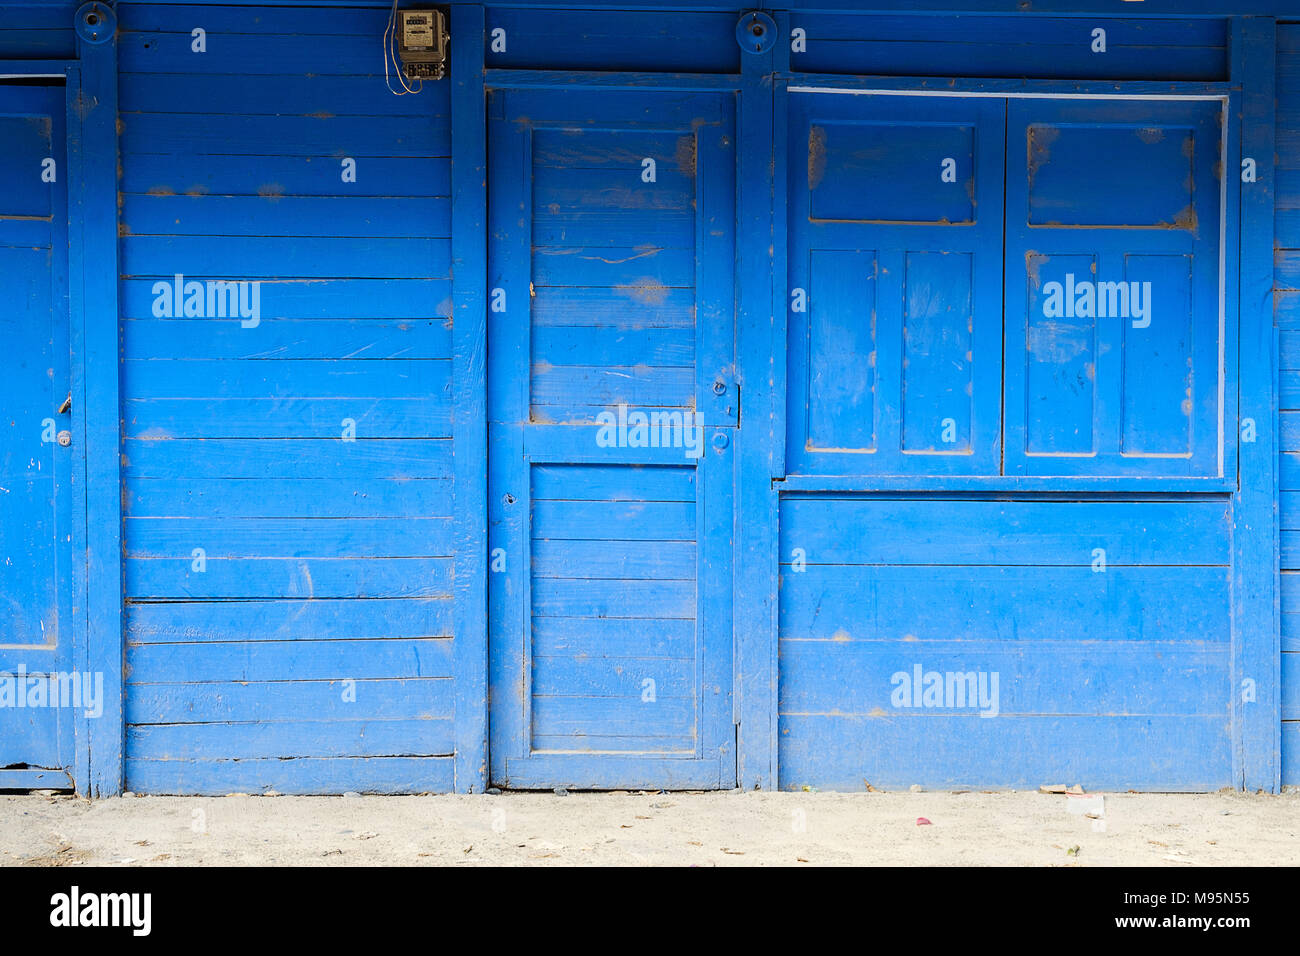 Vorderansicht eines blau lackierten Holz- Haus mit geschlossener Tür-, Fenster- und Shutter - Stockfoto